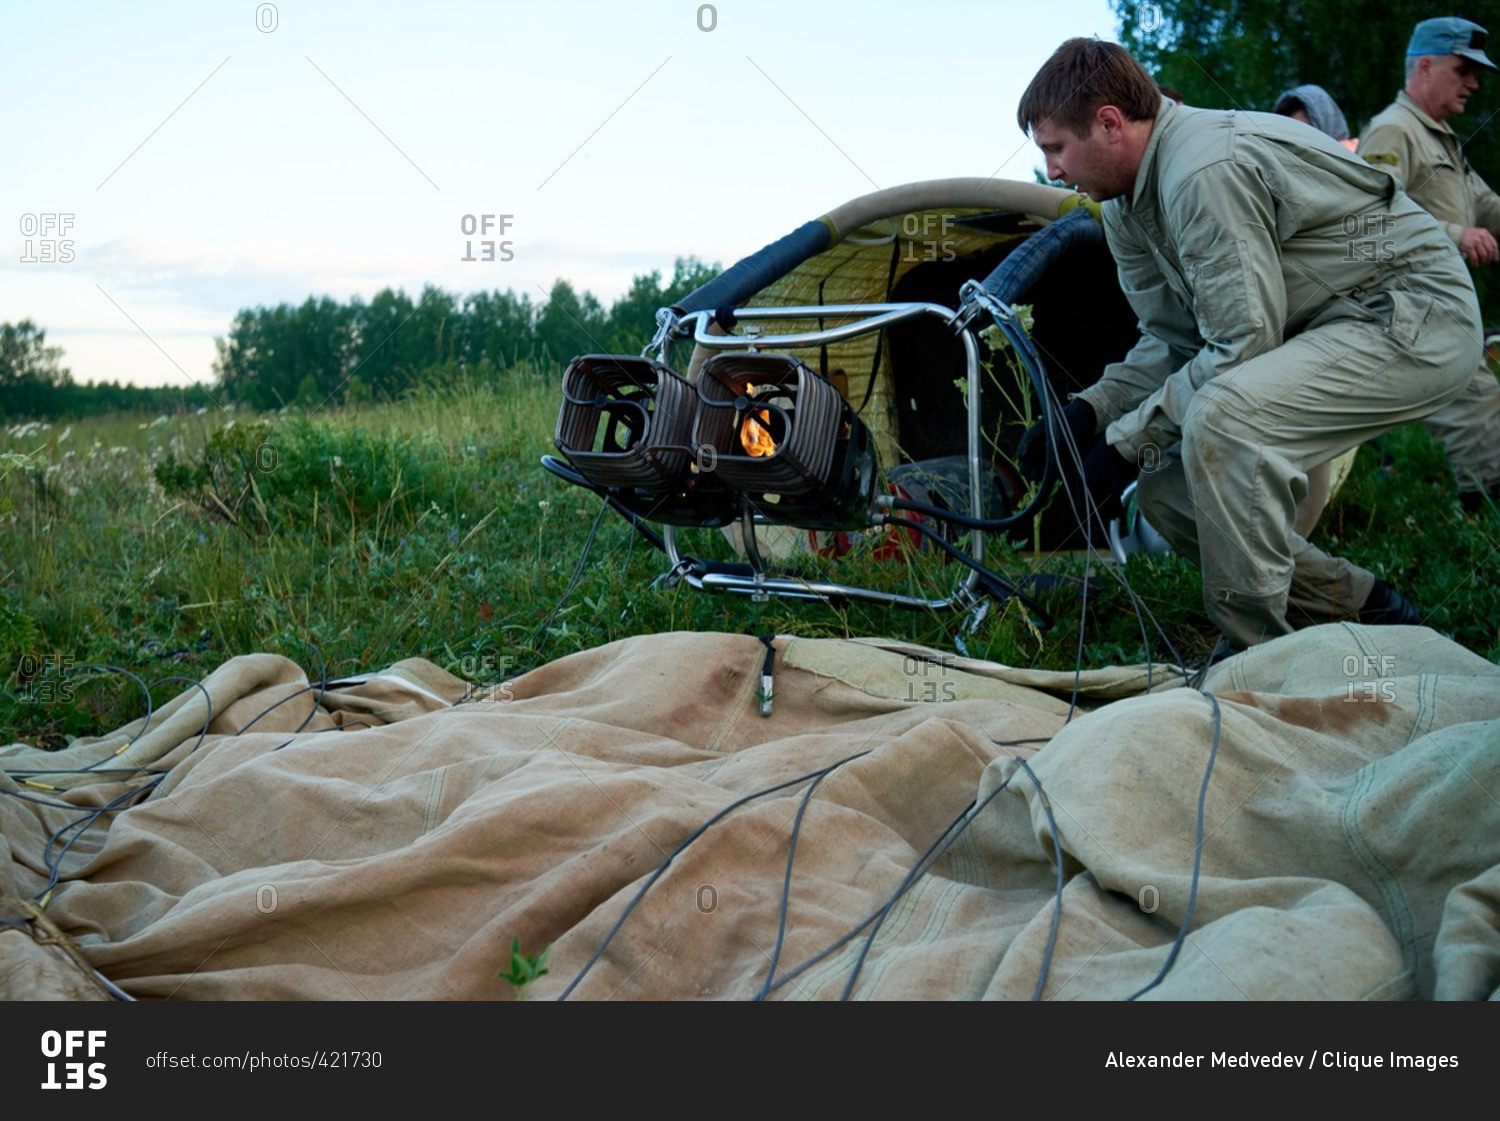 Hot air balloon crew preparing aircraft